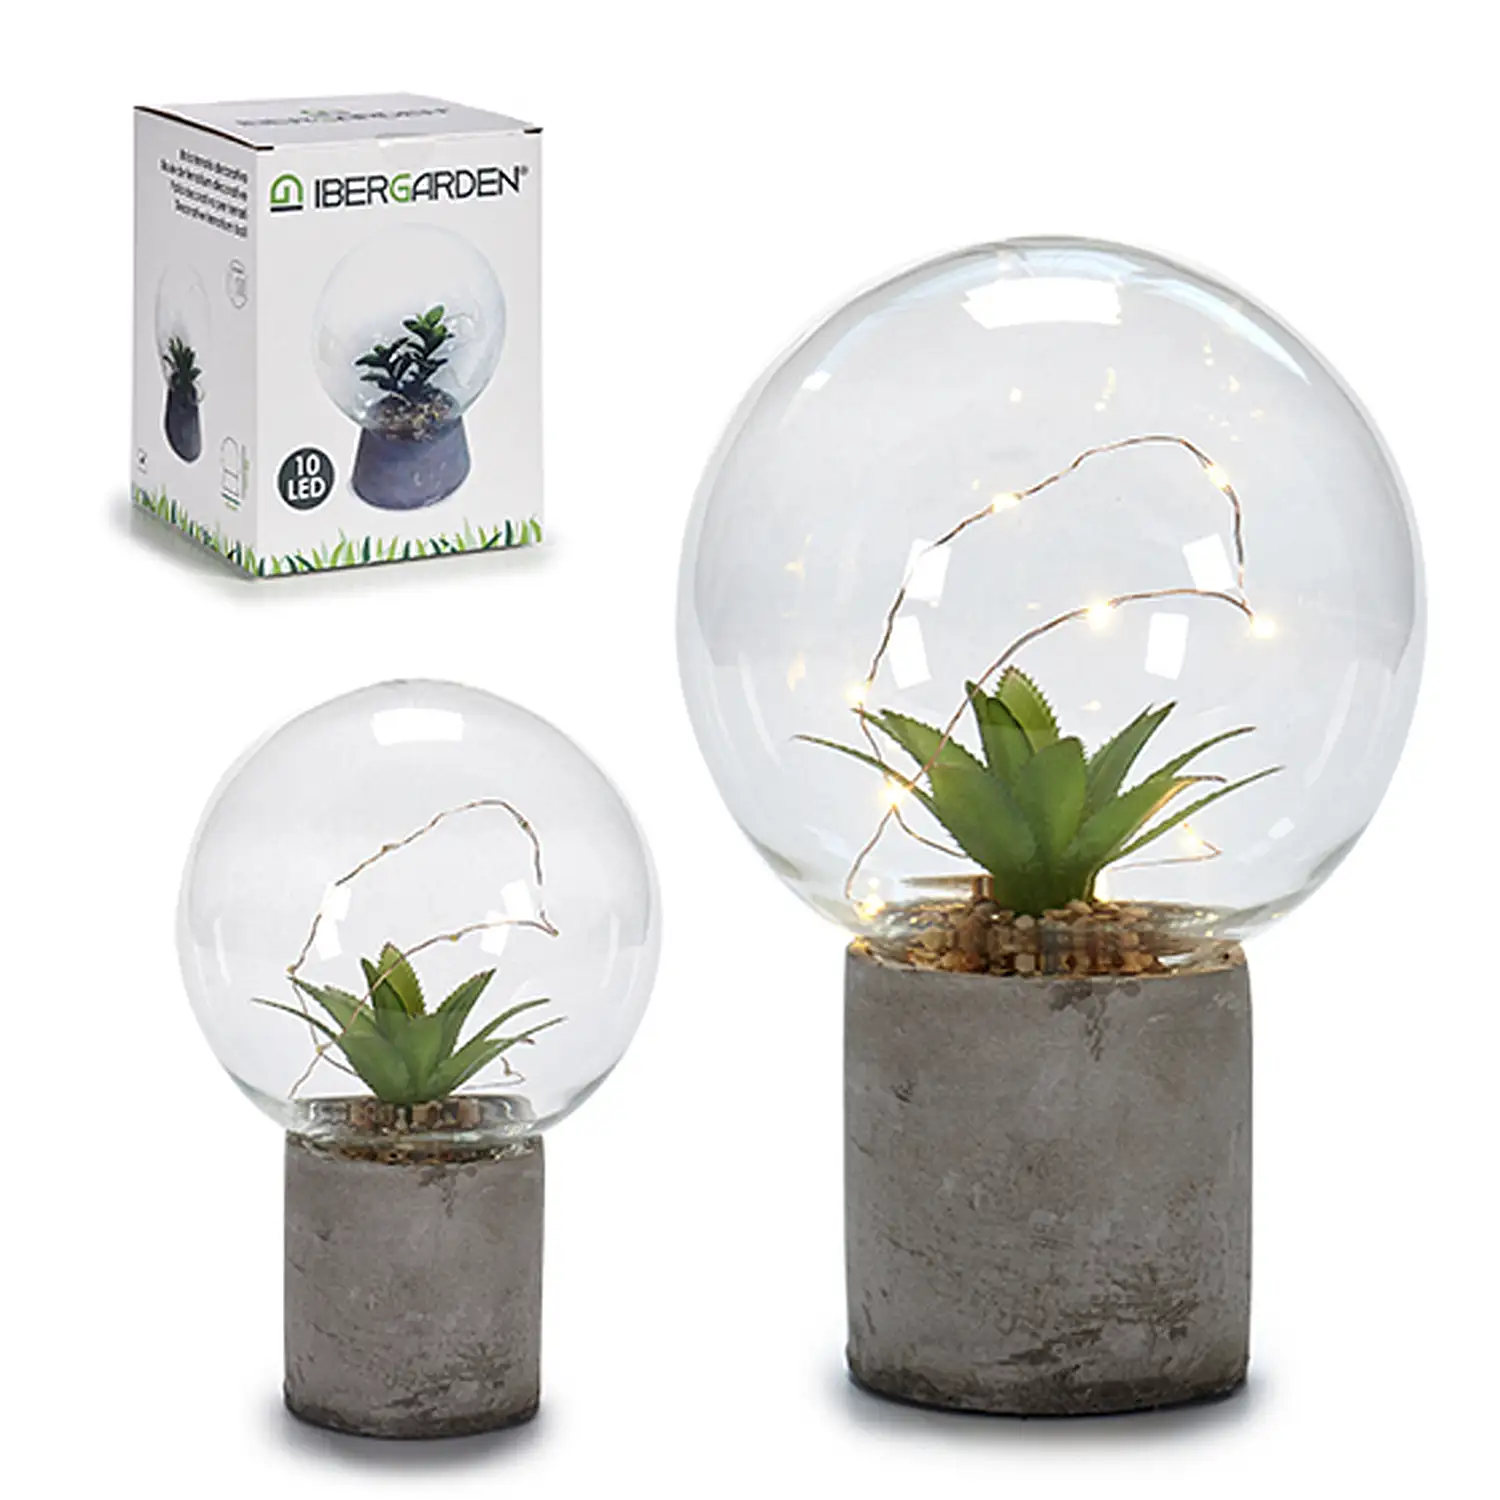 Bola de cristal con planta e iluminación led, base de granito. 2 diseños aleatorios.